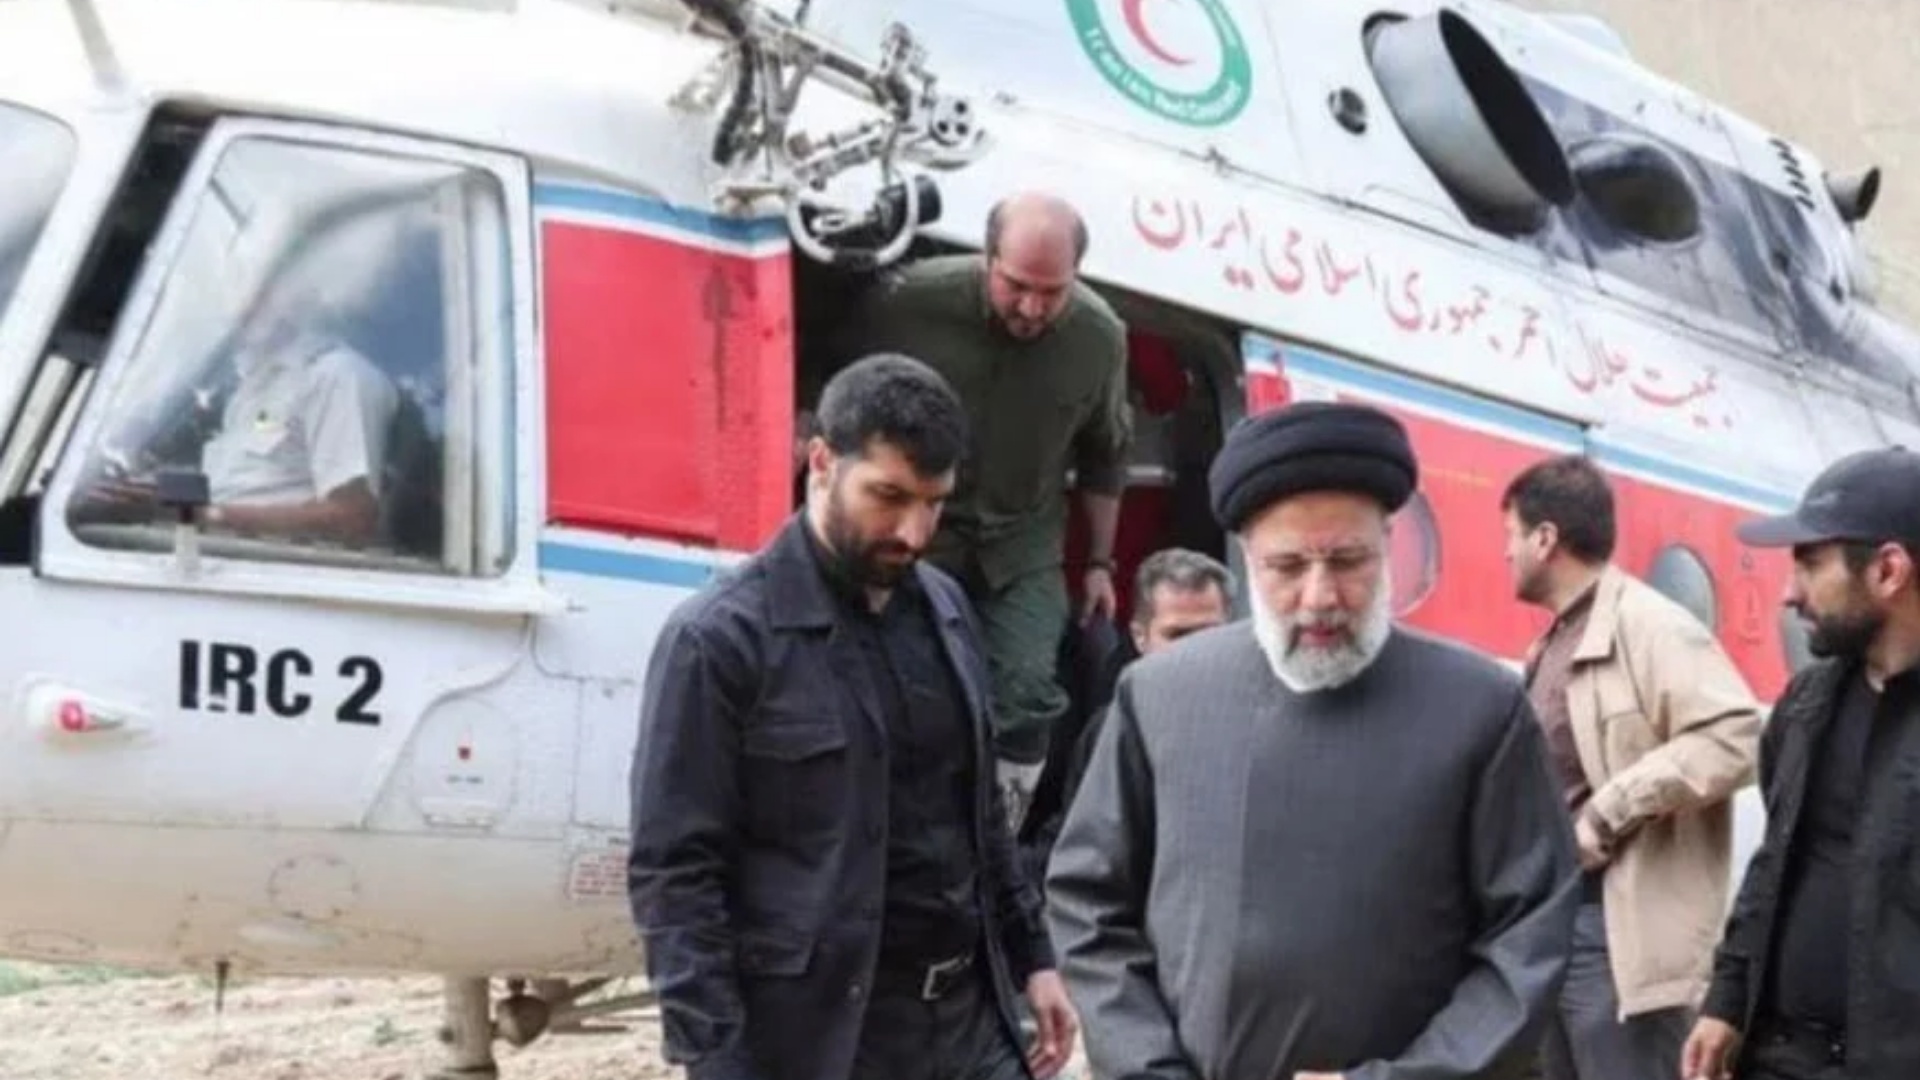 Rrëzohet helikopteri ku po udhëtonte Presidenti i Iranit, ekipet e shpëtimit nuk mbërrijnë dot në zonë!